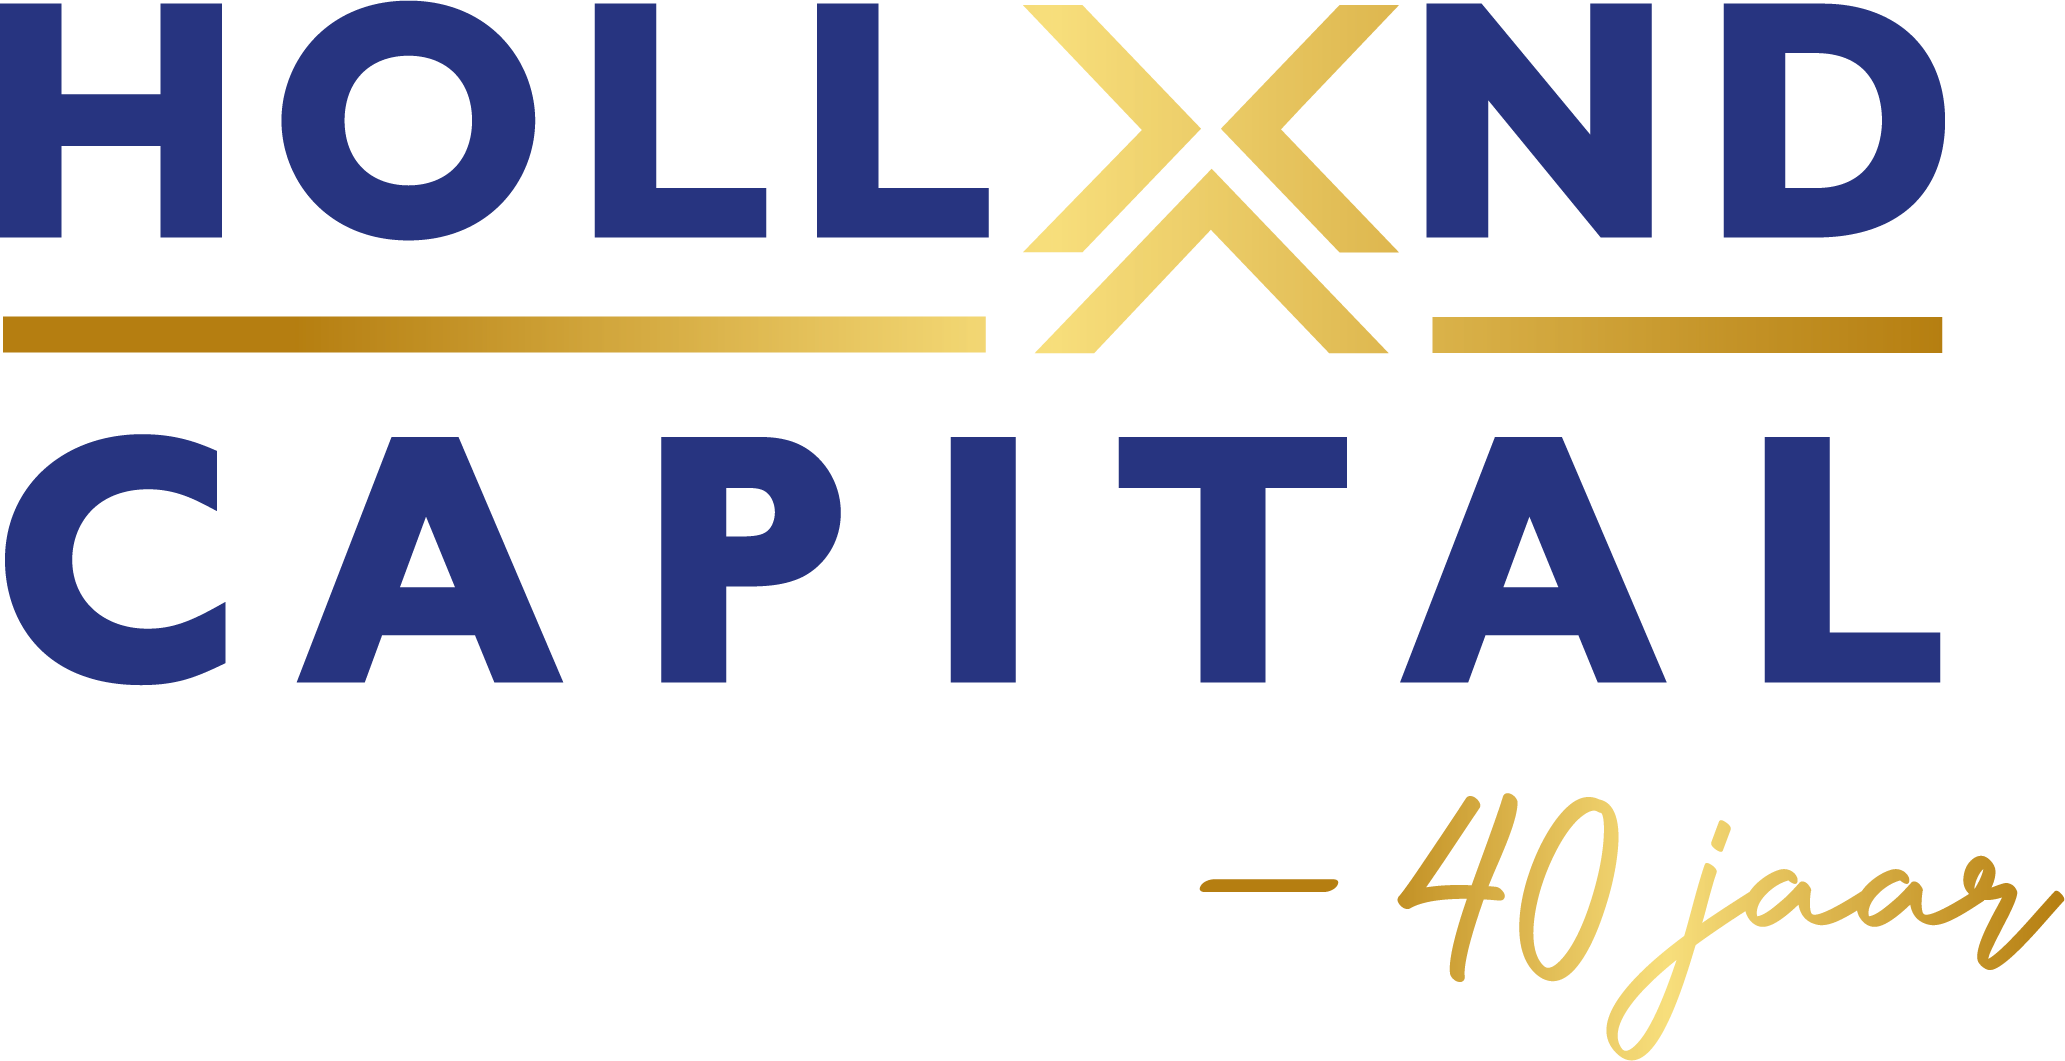 Holland capital logo 2223